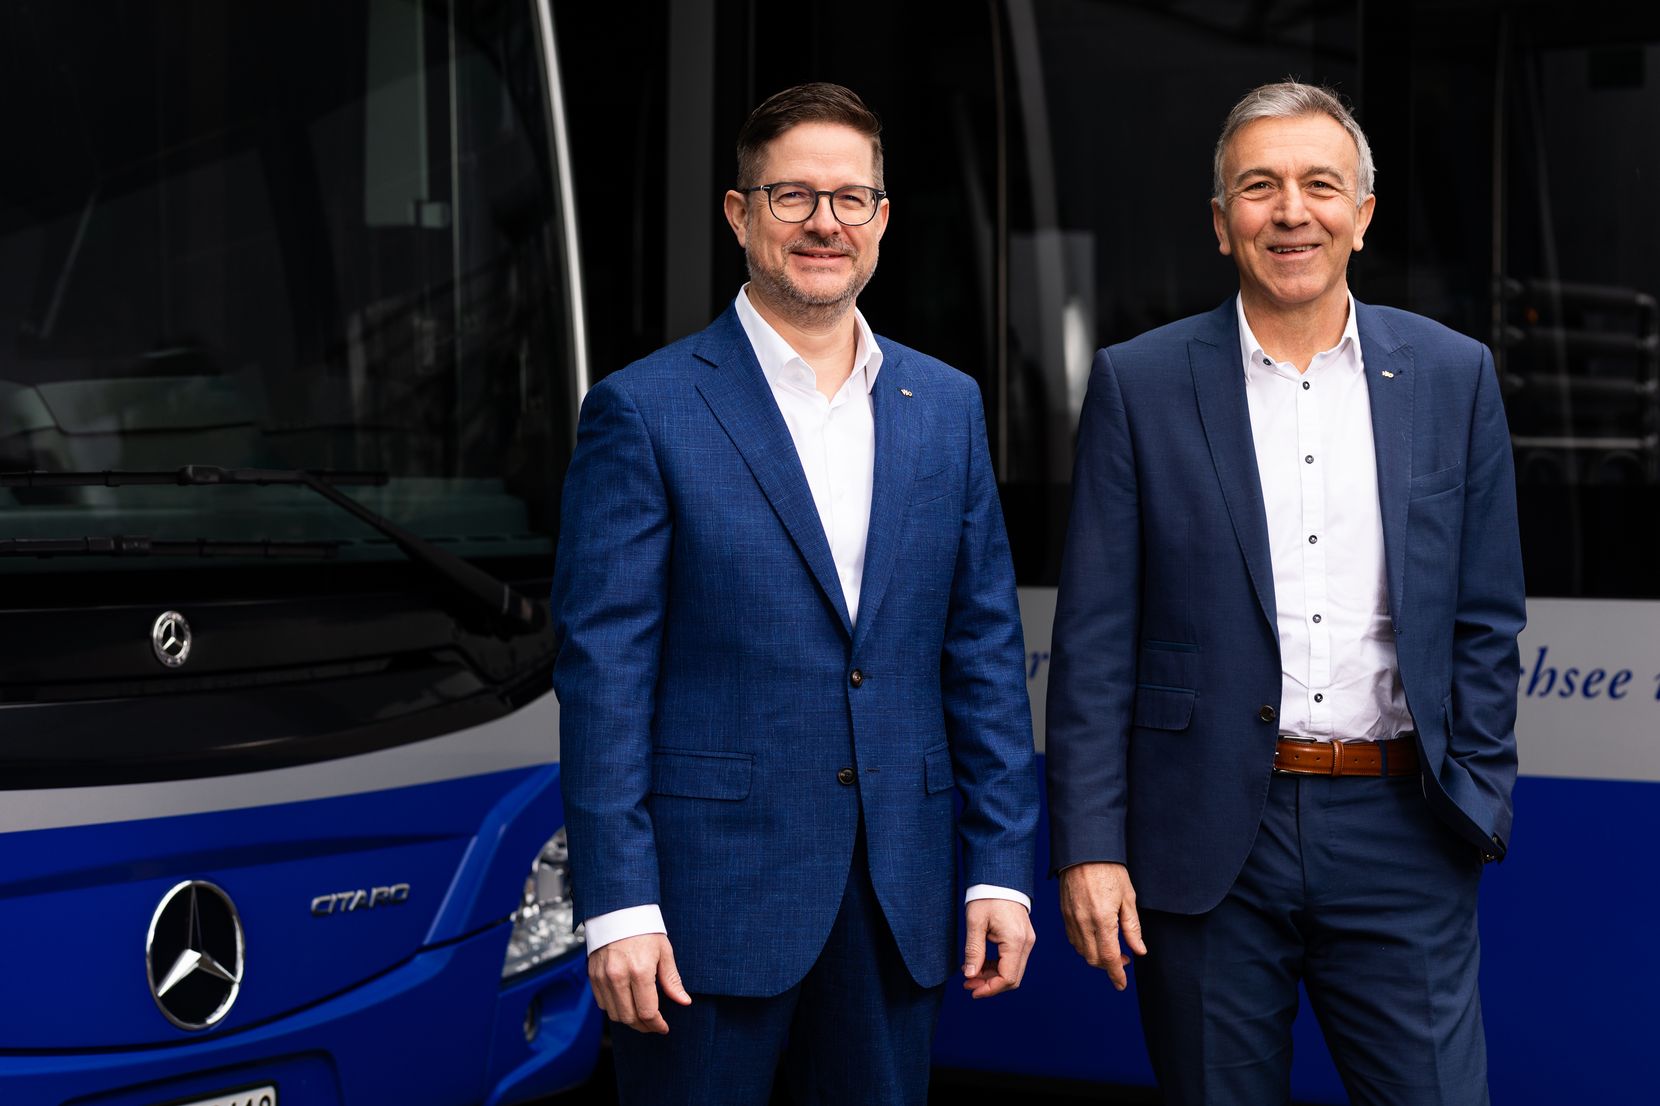 Der neue und der alte Direktor der VZO vor blauen Autobussen.